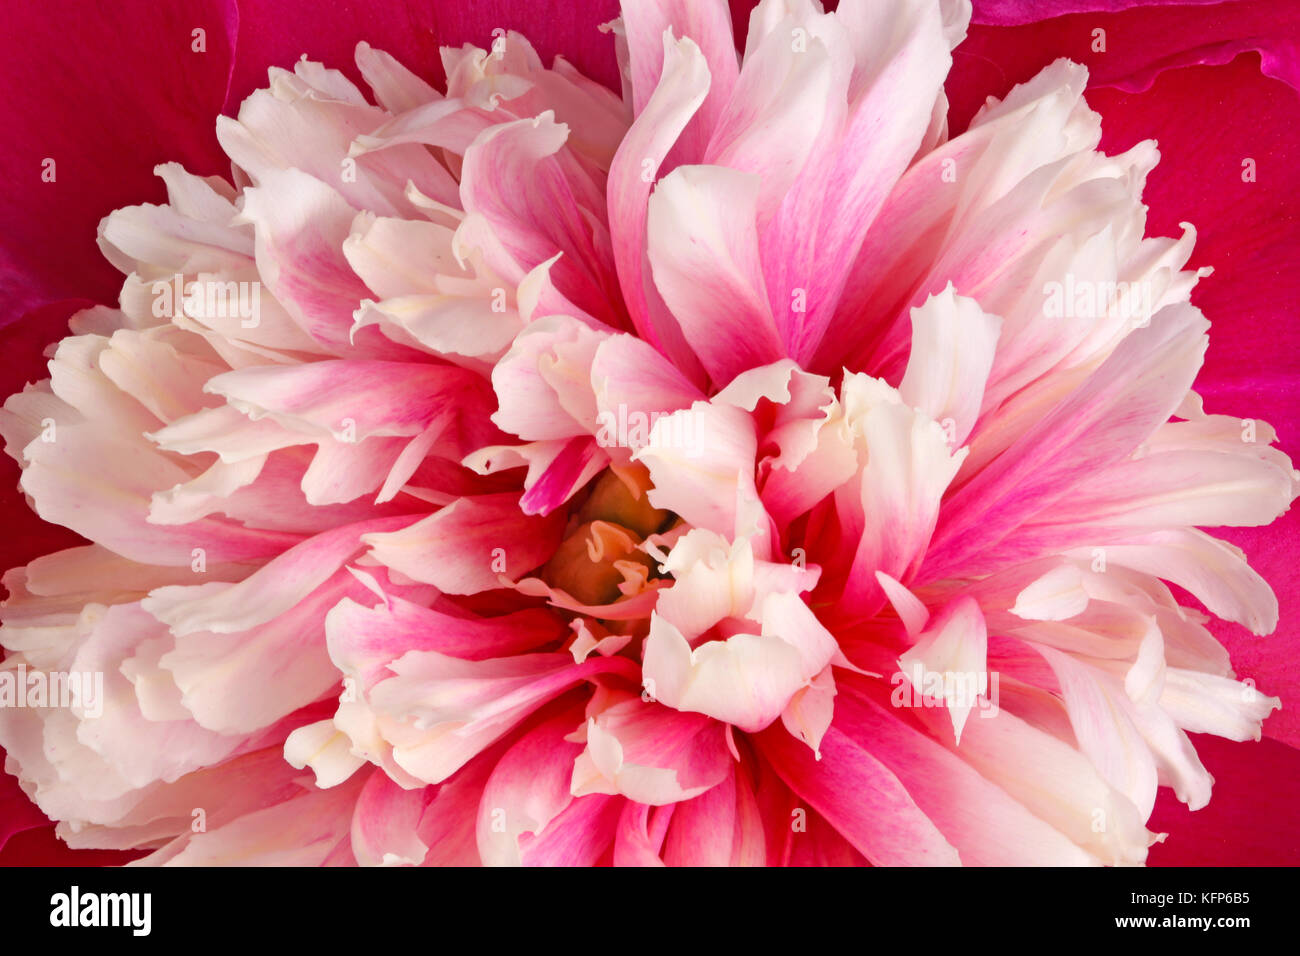 Nahaufnahme einer rosa, rot und weiß Anemone - form Pfingstrose (Paeonia lactiflora) Blüte füllt den Rahmen Stockfoto